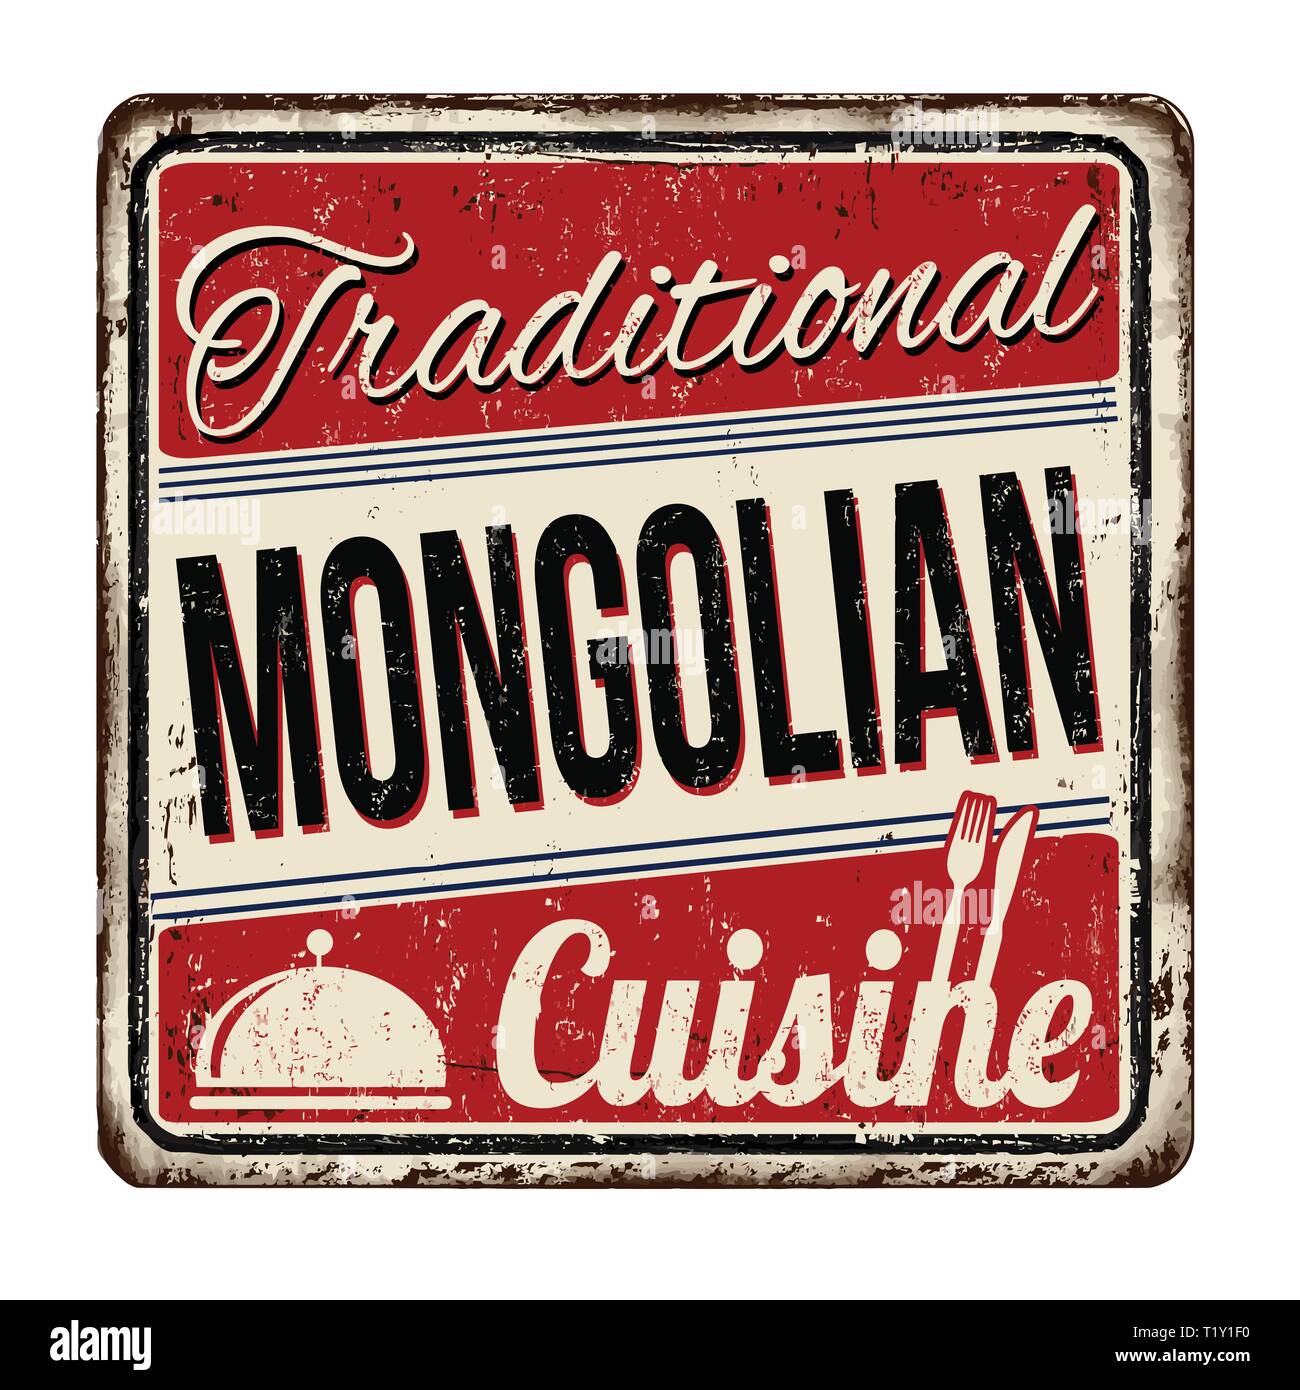 Traditionelle mongolische Küche vintage rostiges Metall Zeichen auf weißem Hintergrund, Vector Illustration Stock Vektor